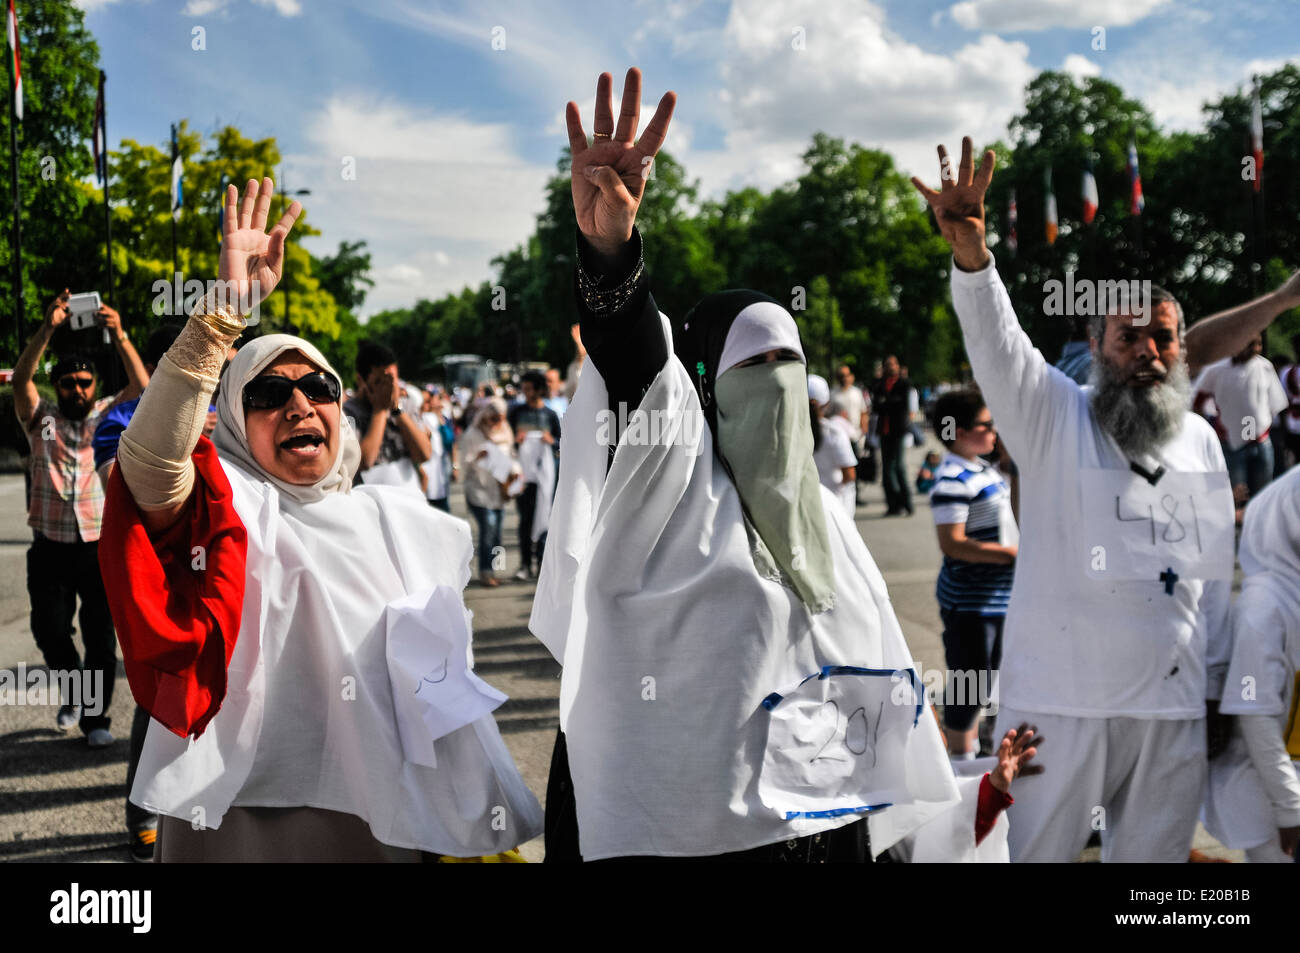 Les Egyptiens donnent une quatre frères musulmans fingered salute comme ils l'étape de protester contre les violations des droits de l'homme en Egypte y compris la mort, l'emprisonnement et la violence soutenue par l'état Banque D'Images